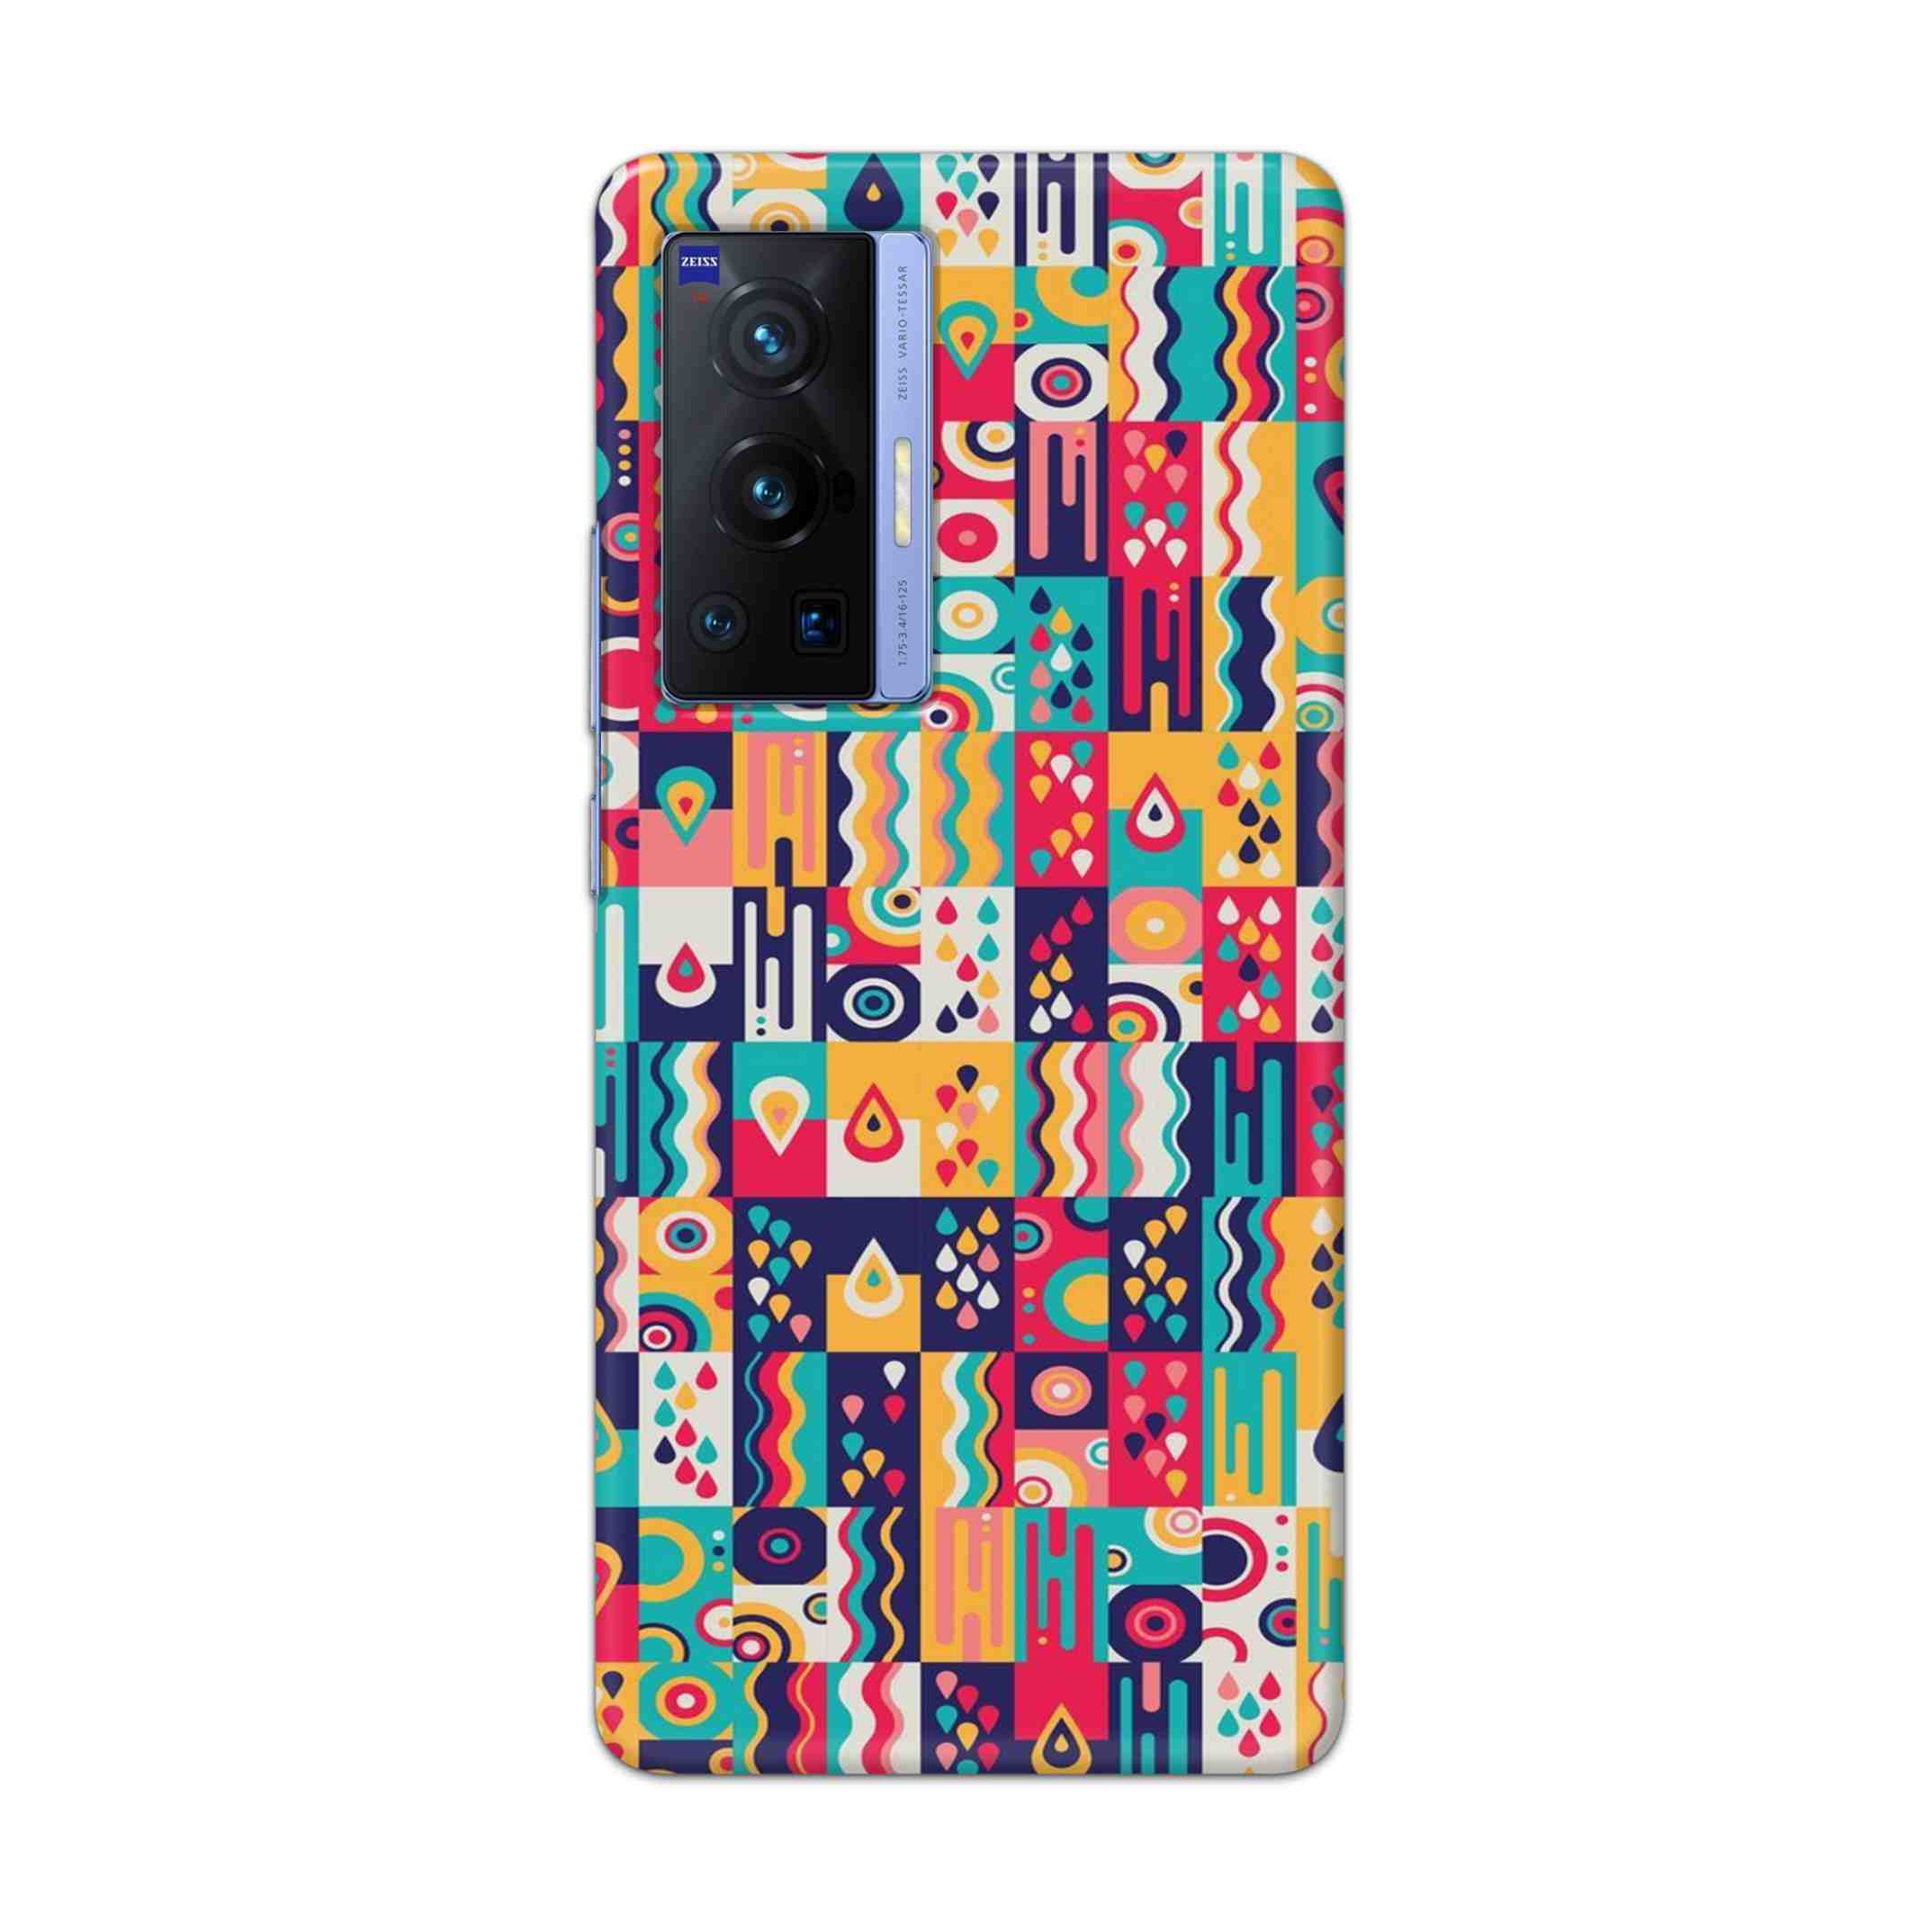 Buy Art Hard Back Mobile Phone Case Cover For Vivo X70 Pro Online